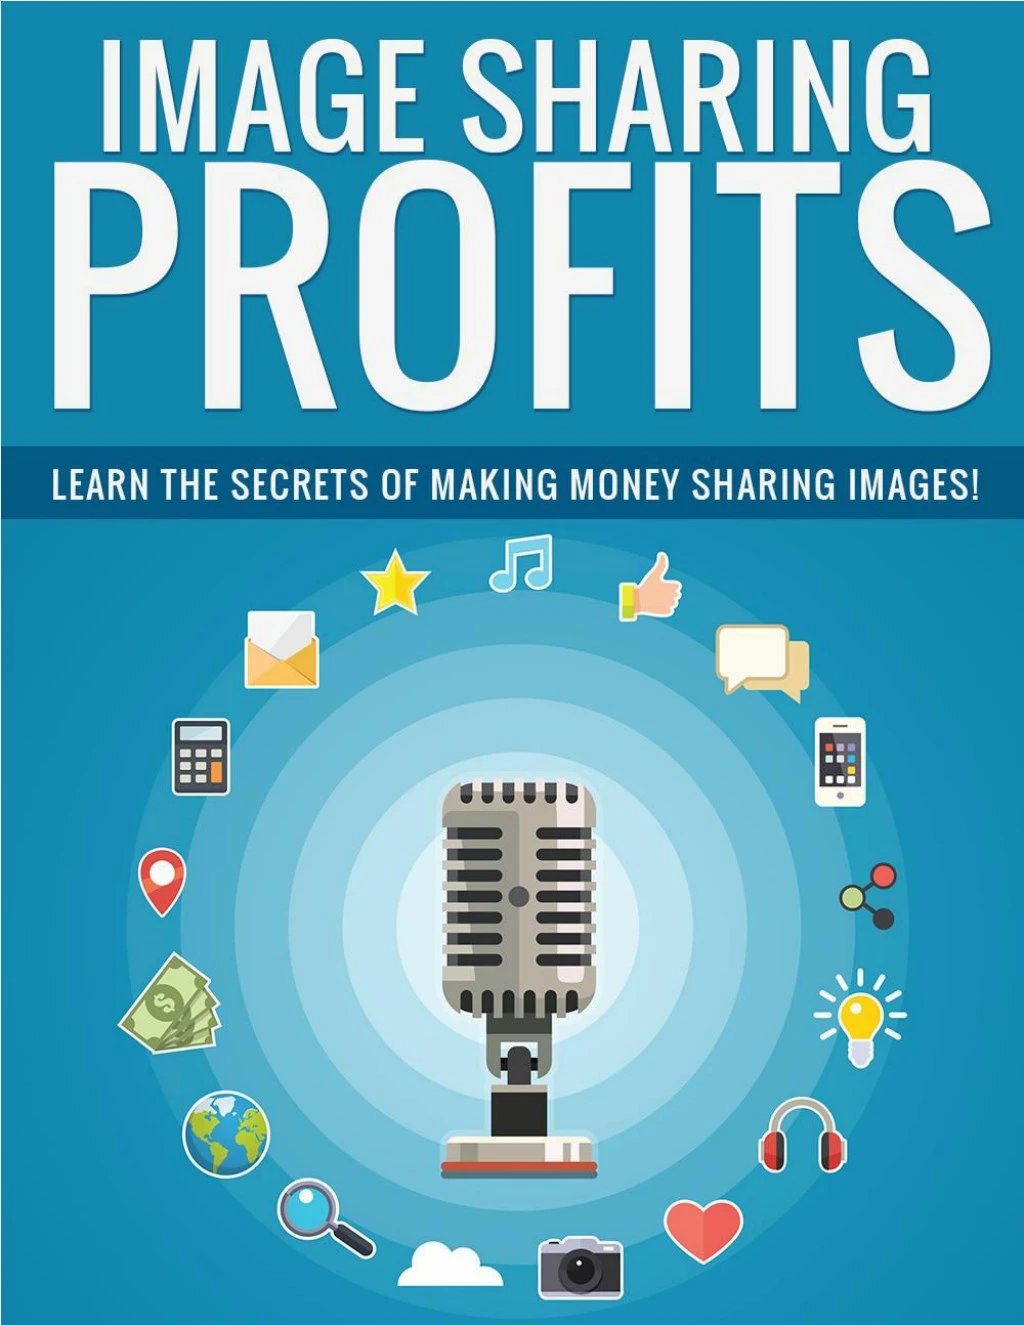 image sharing profits